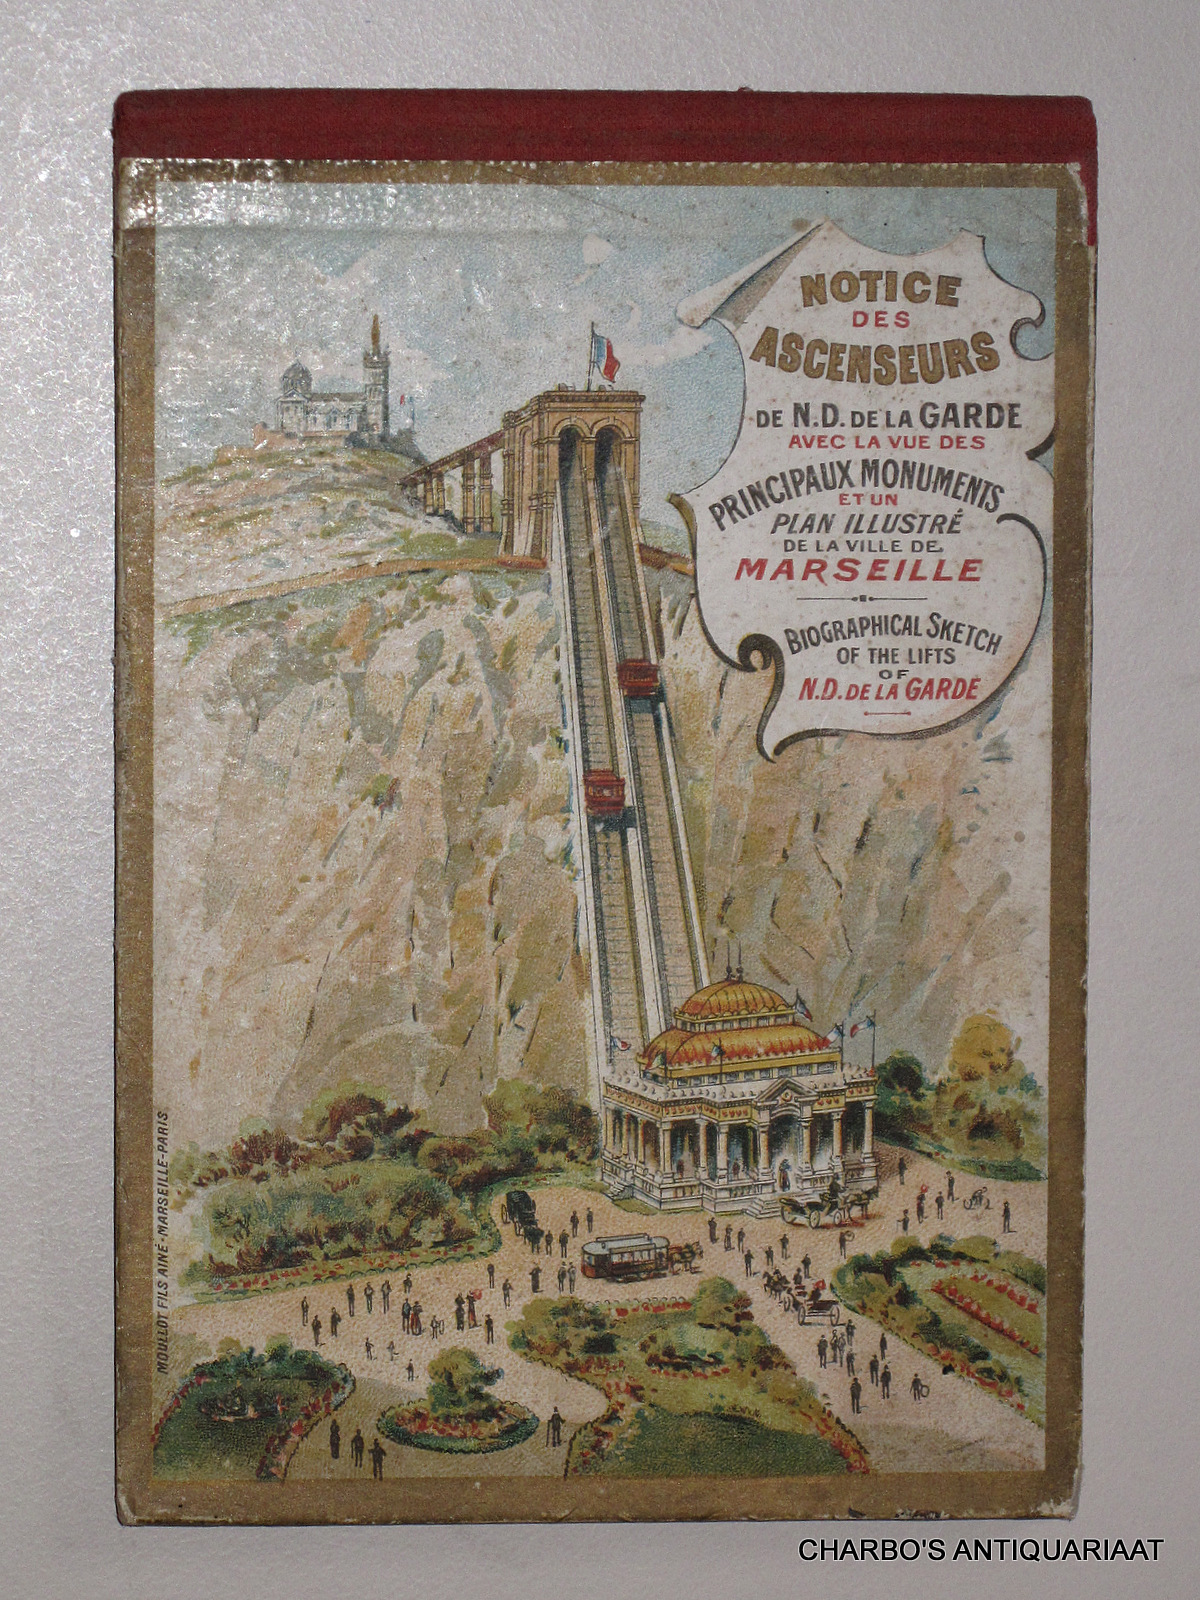 MARSEILLE. -  Notice des ascenseurs de N.D. de la Garde avec la vue des principaux monuments et un plan de la ville de Marseille. Biographical sketch of the lifts of N.D. de la Garde.